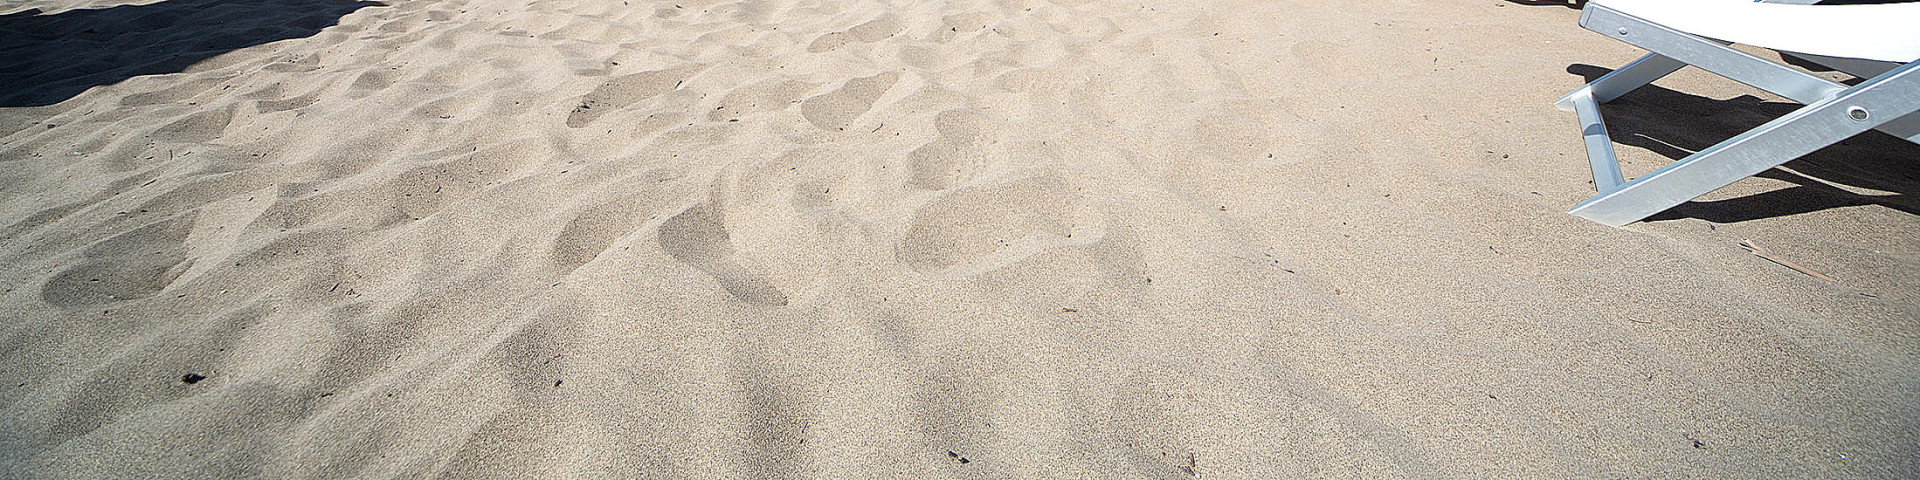 Paestum, typ pláže, jemný nažloutlý i našedlý písek